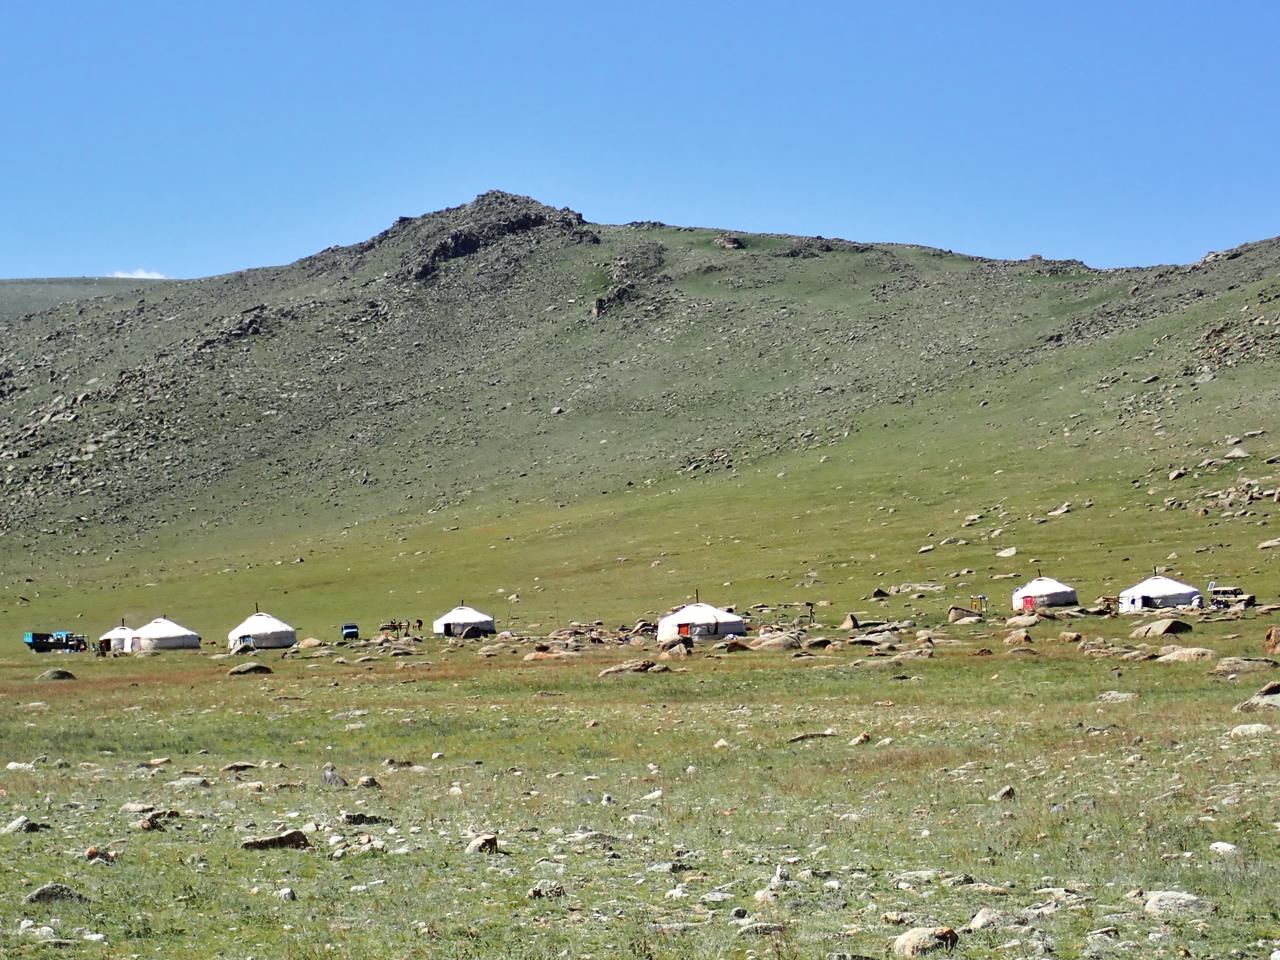 Yurten in der Mongolei